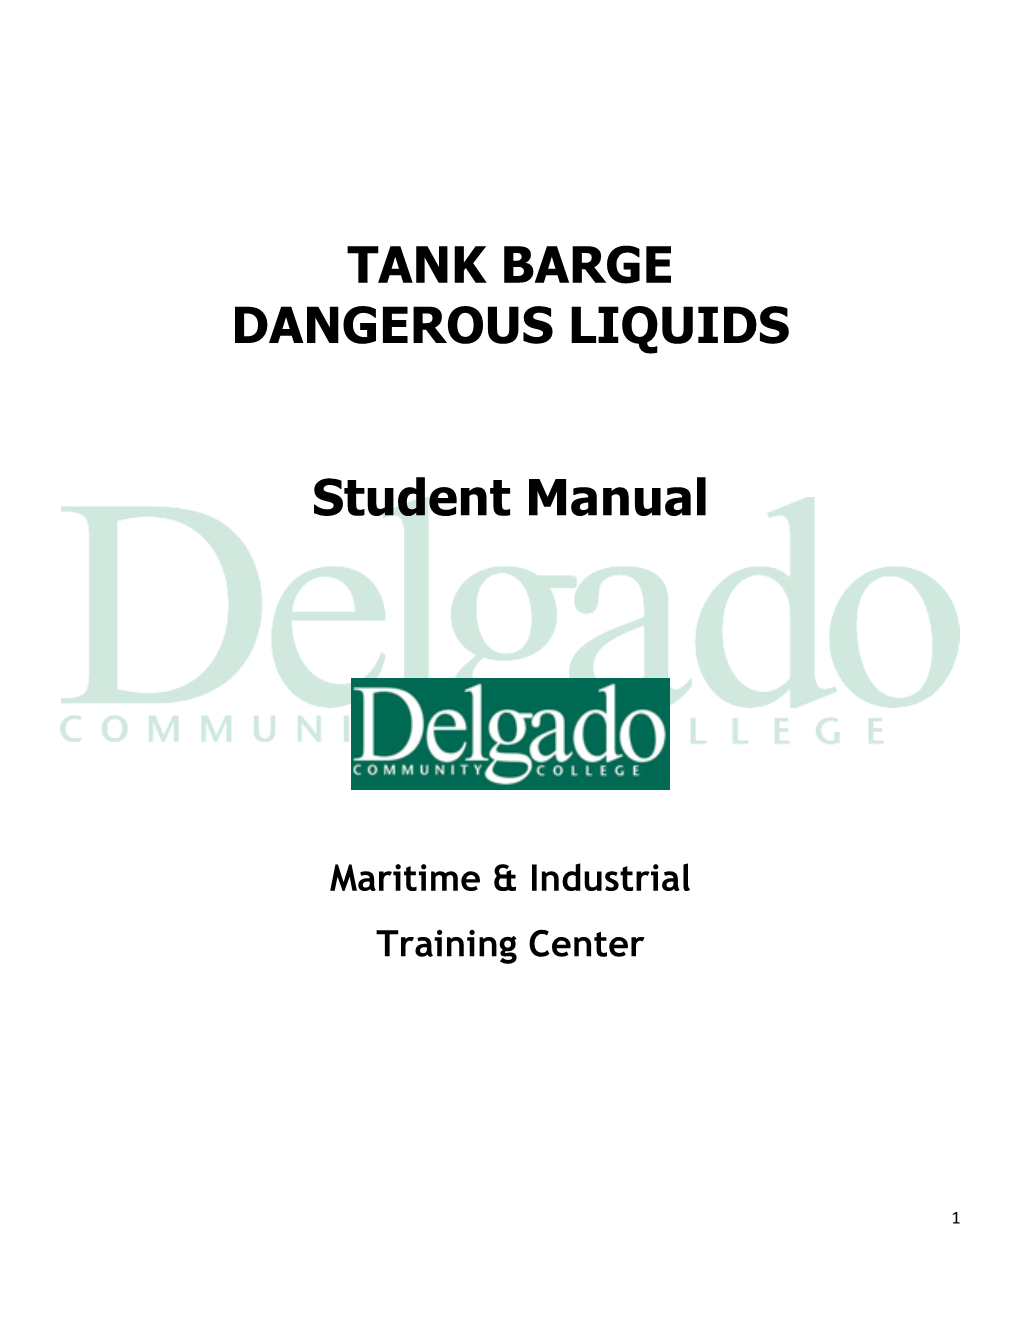 TANK BARGE DANGEROUS LIQUIDS Student Manual